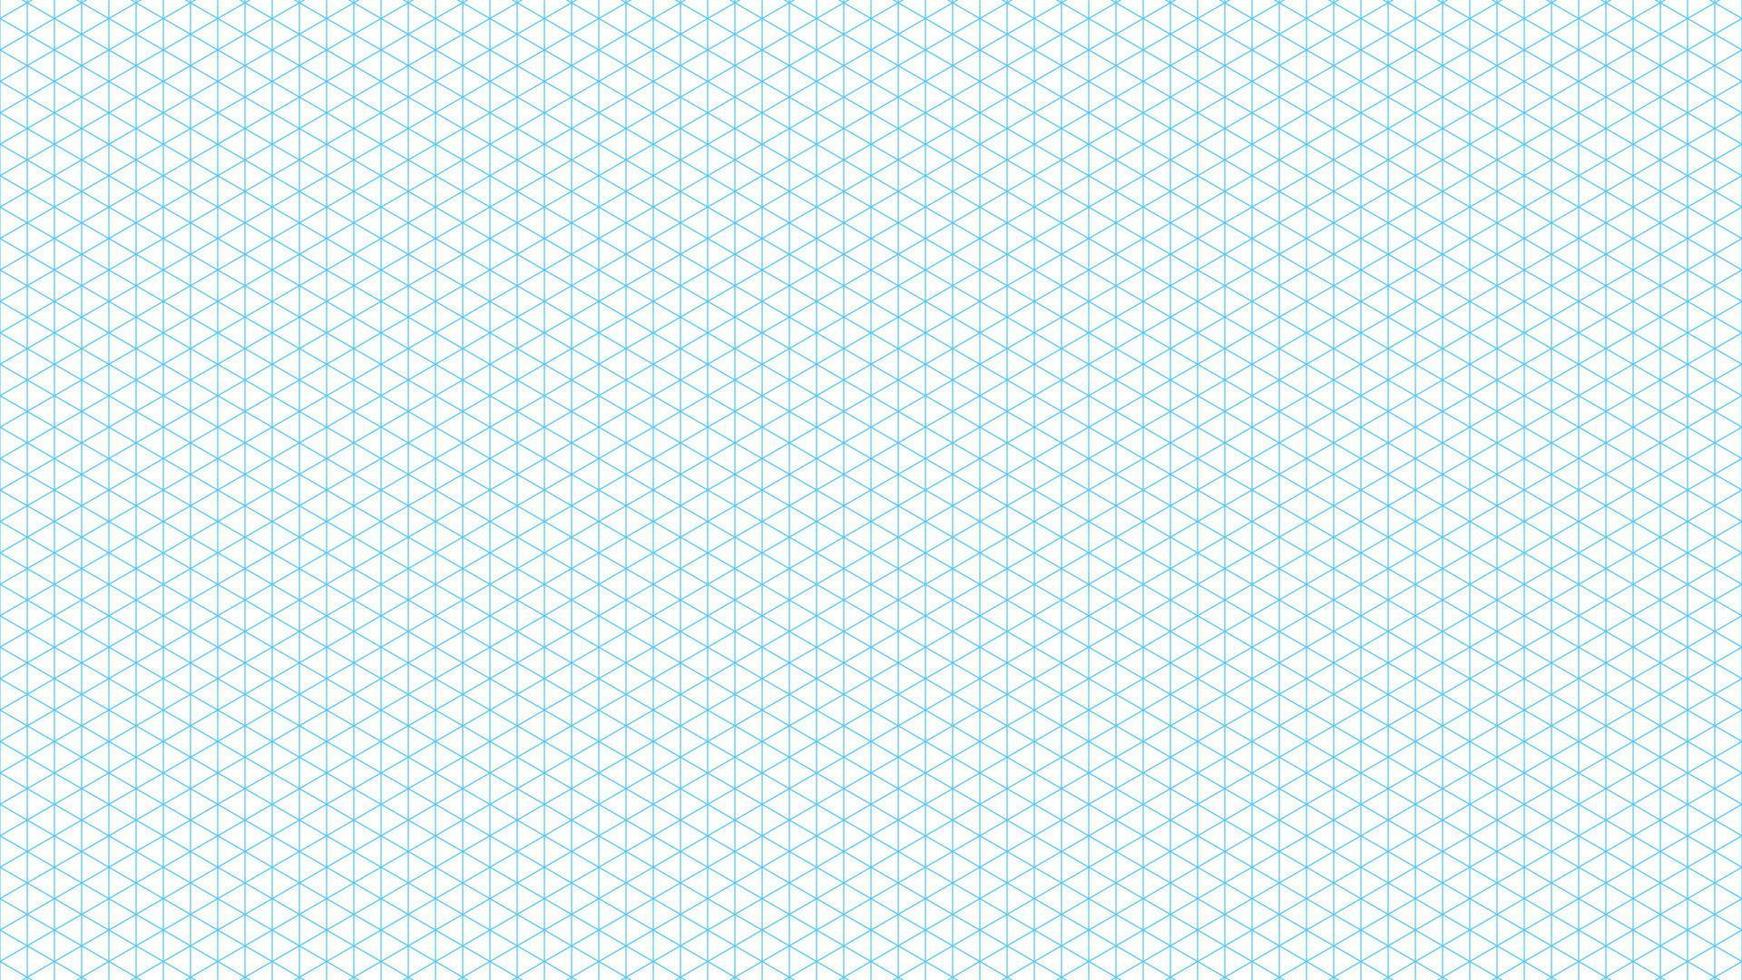 Zoll Millimeterpapier Raster. blaues muster für zeichnungen, engineering, projekte, architekten. Hintergrund für Bildung, Ausbildung, Universitäten, Hochschulen und Schulen. vektor